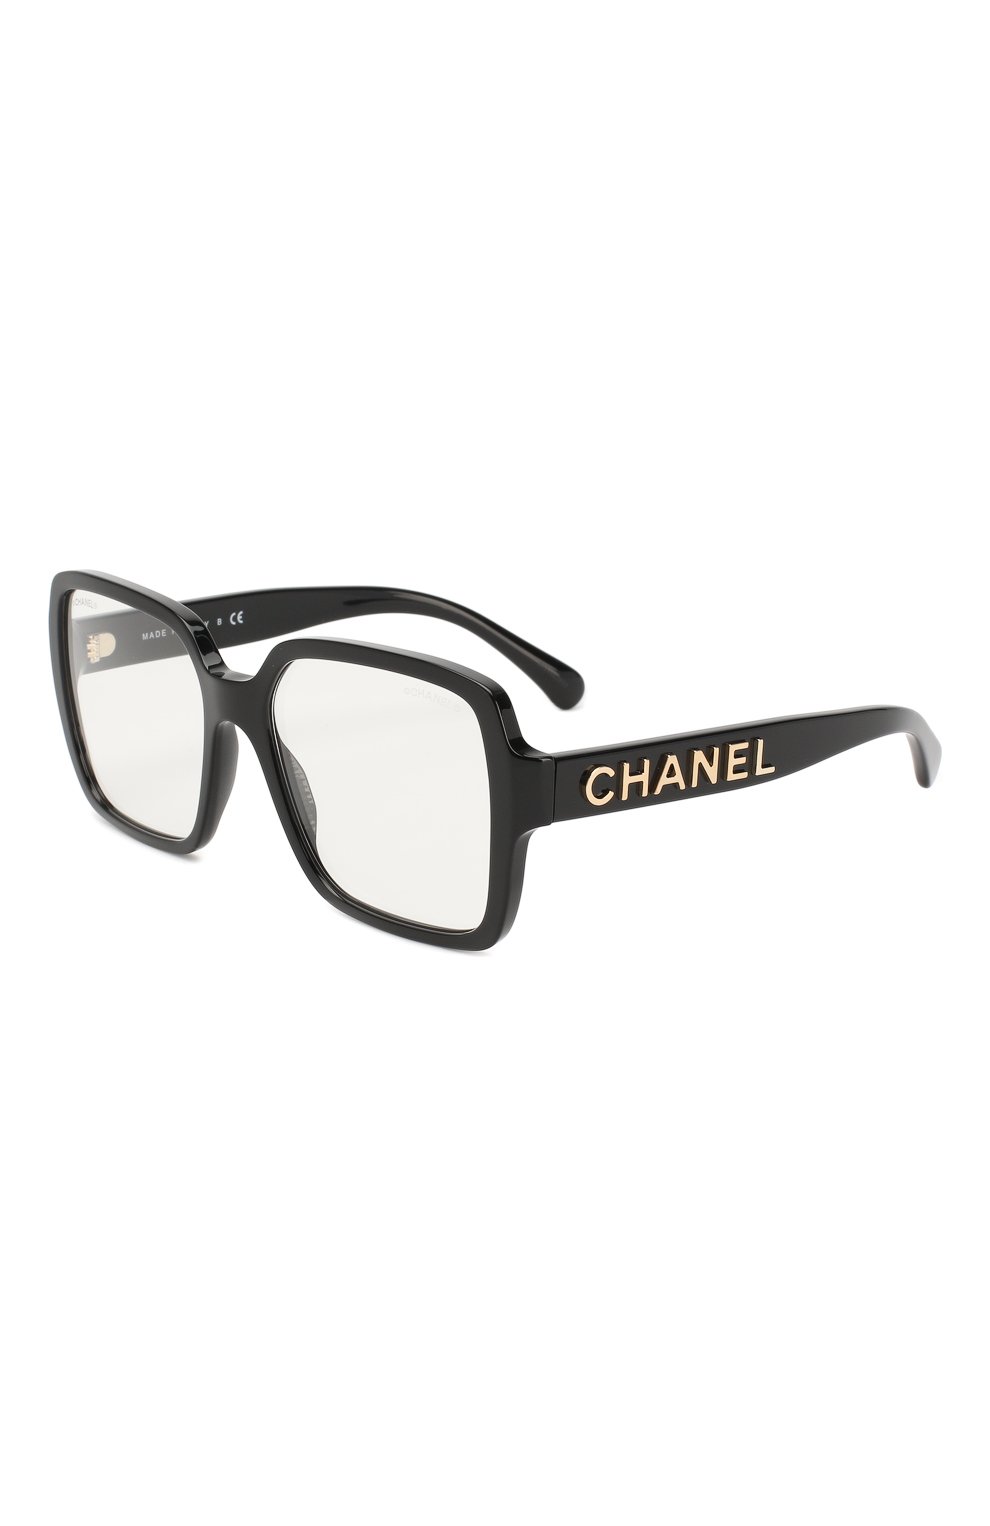 Очки Chanel, Солнцезащитные очки Chanel, Италия, Чёрный, Оправа-ацетат;, 10467493  - купить